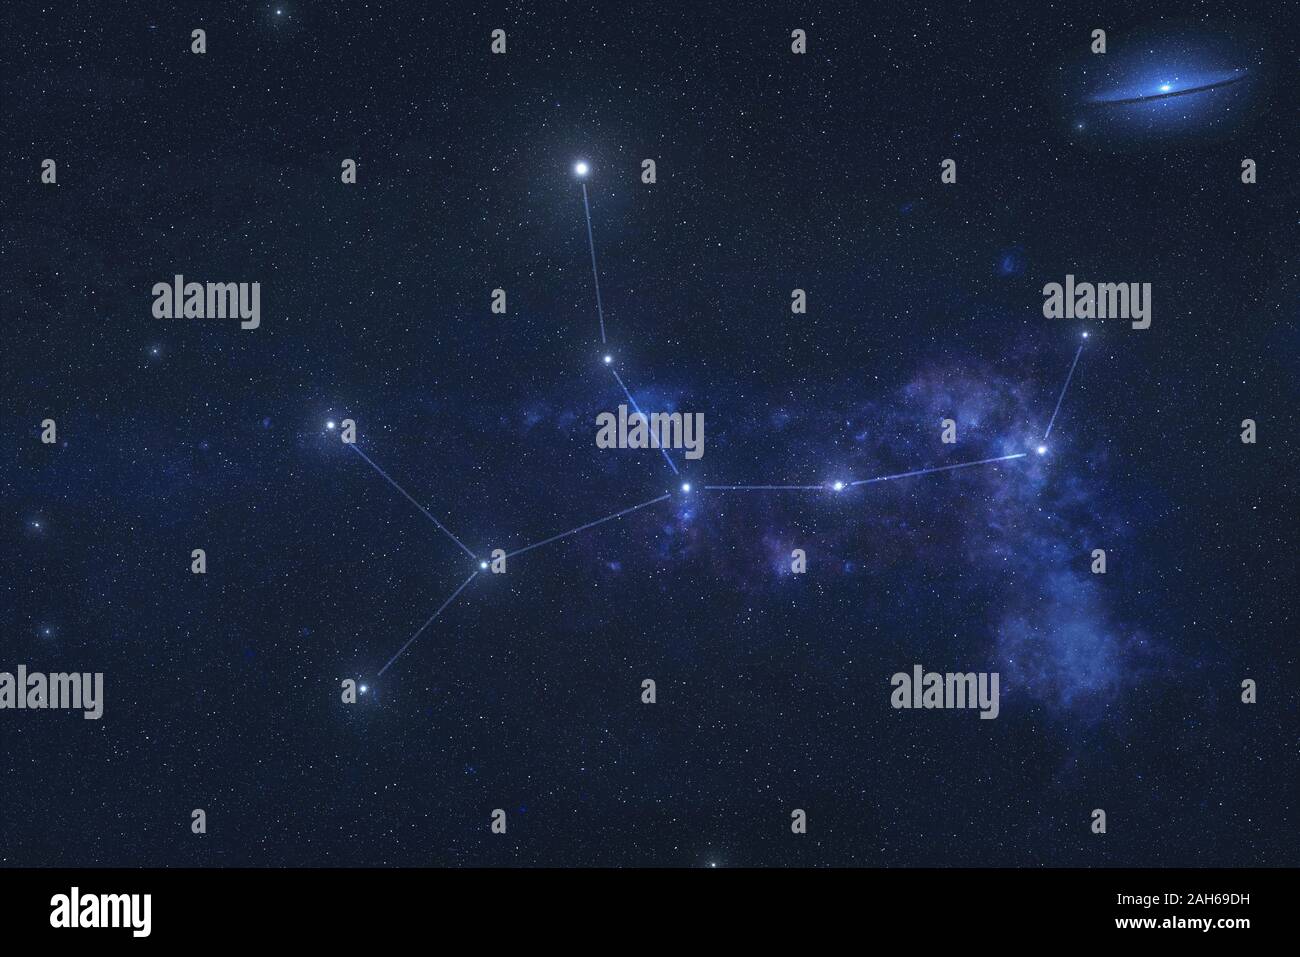 Virgo Sternbild Sterne Im Weltraum Sternzeichen Jungfrau Konstellation Linien Elemente Dieses Bild Wurde Von Der Nasa Eingerichtet Stockfotografie Alamy